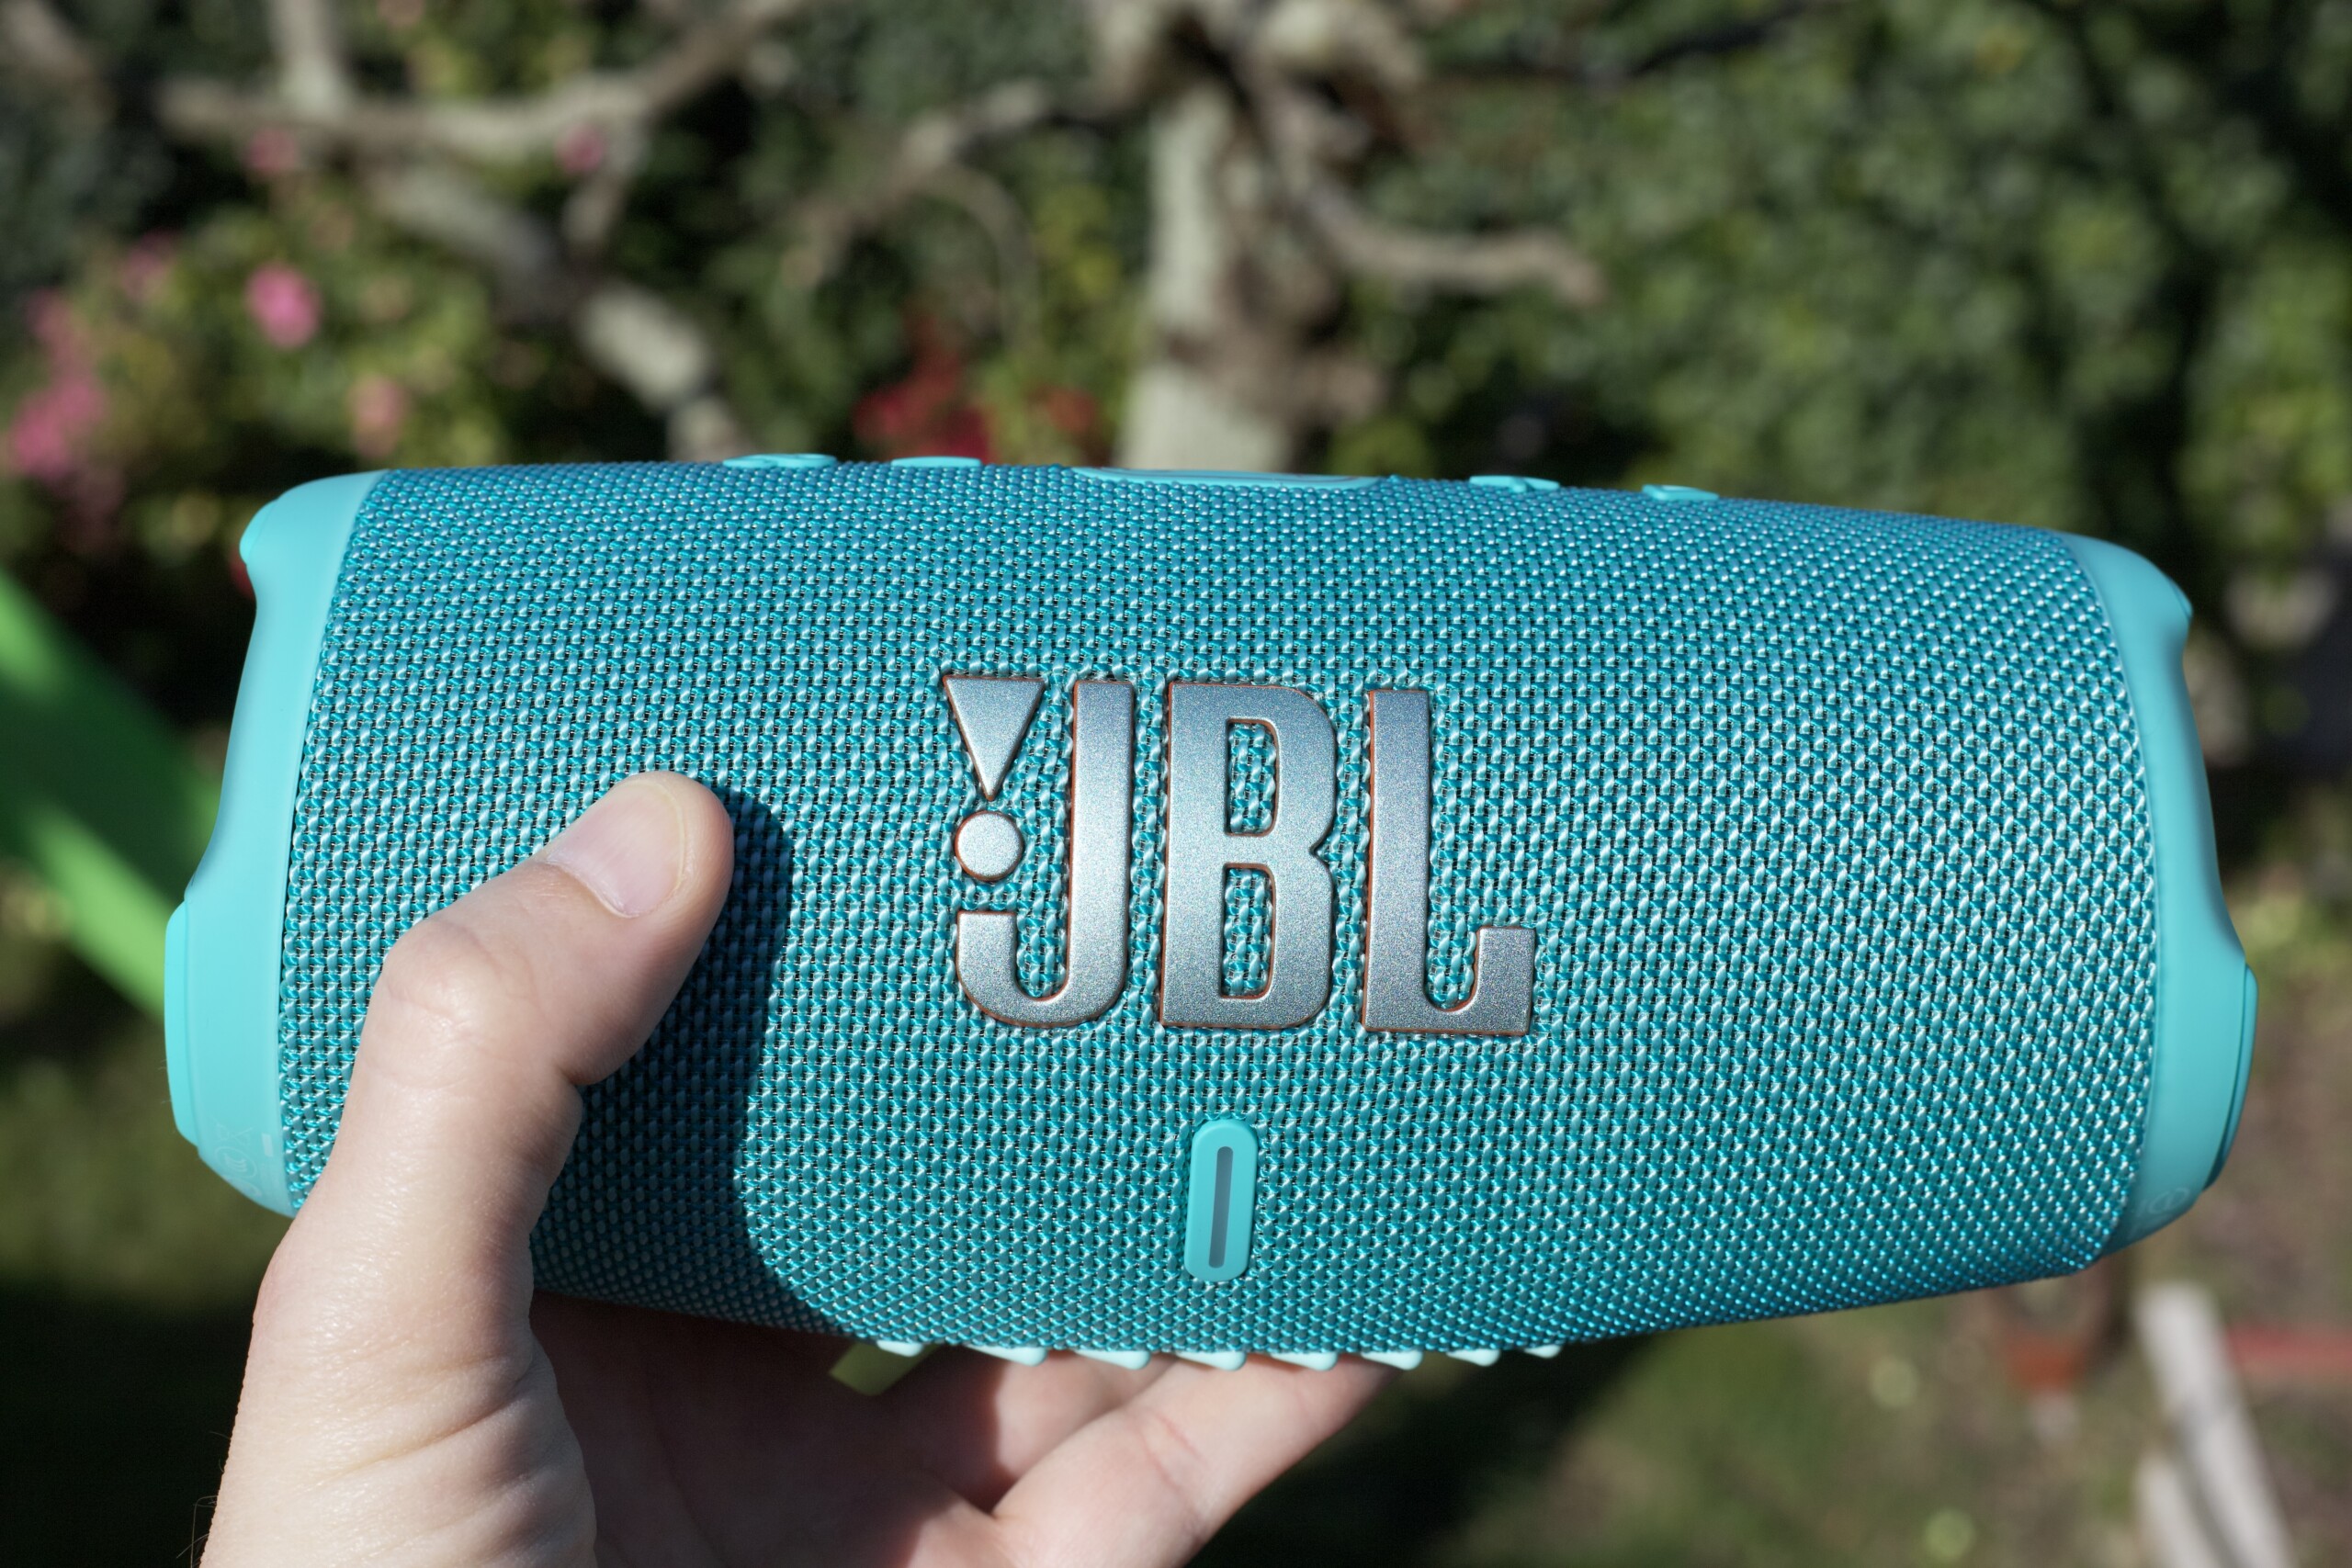 JBL Charge 4 : meilleur prix, test et actualités - Les Numériques